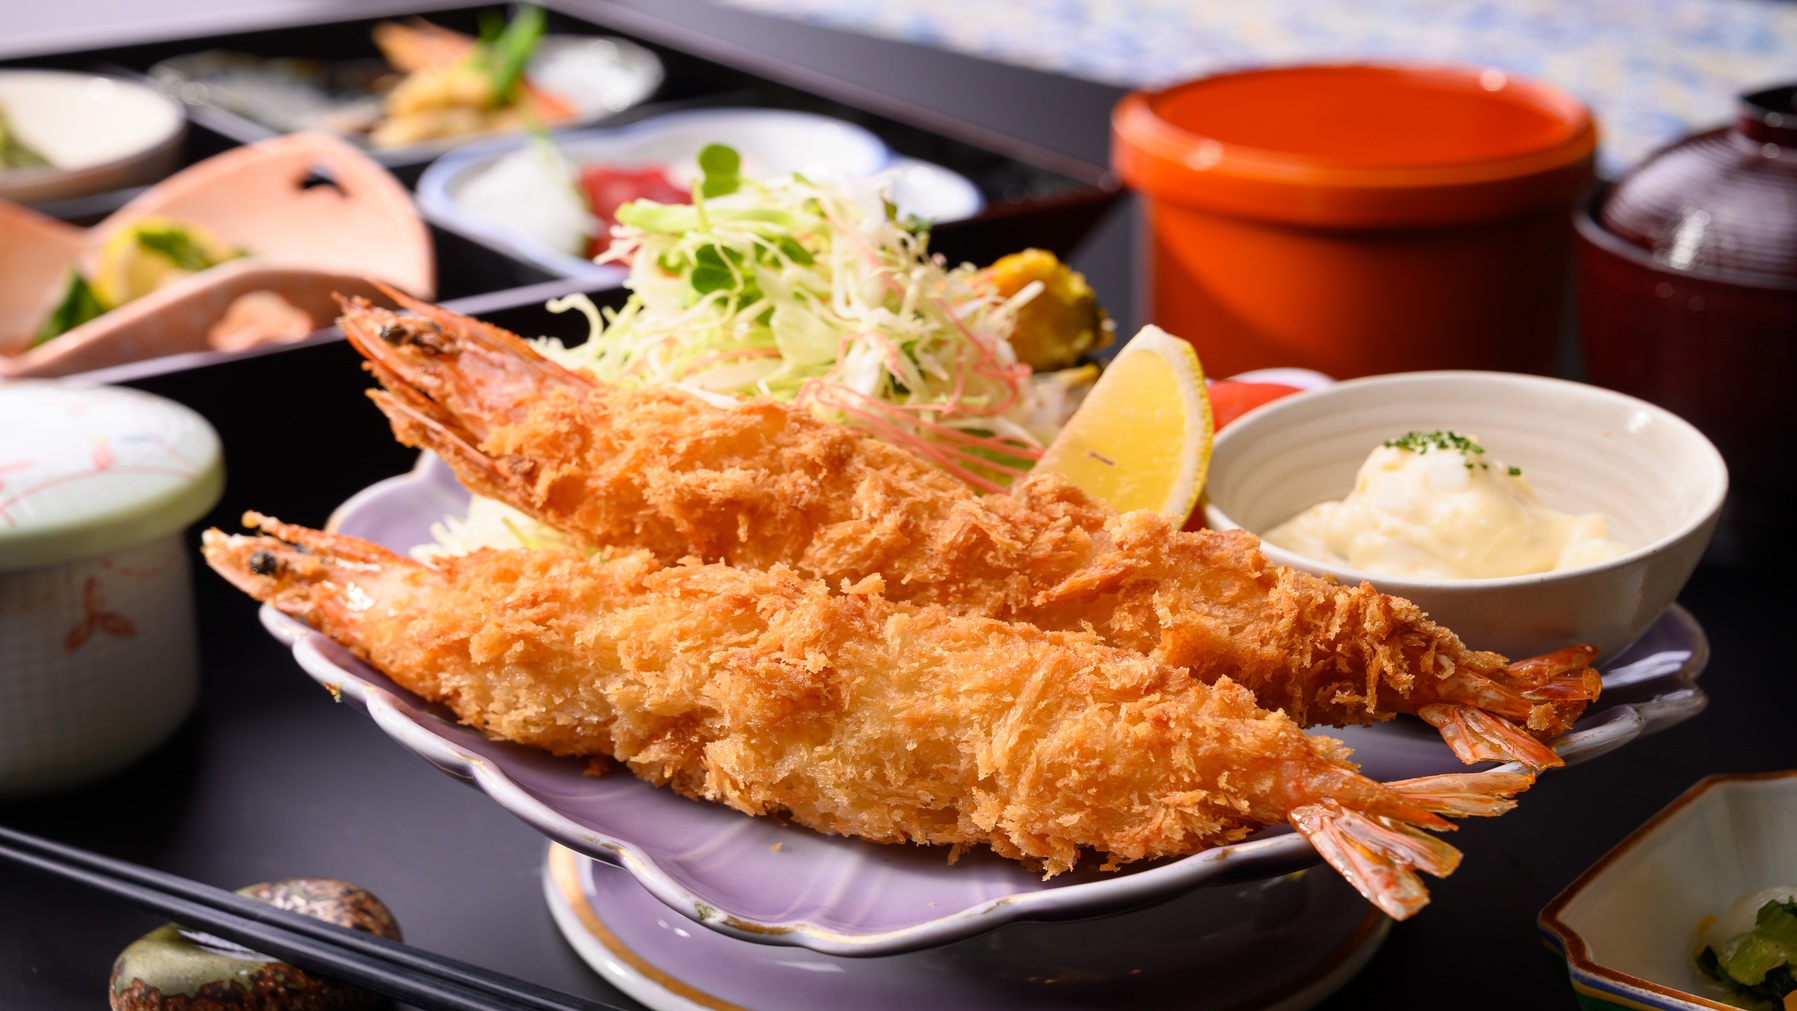 松花堂御膳とおおきな海老フライのおなか満足の食事です。